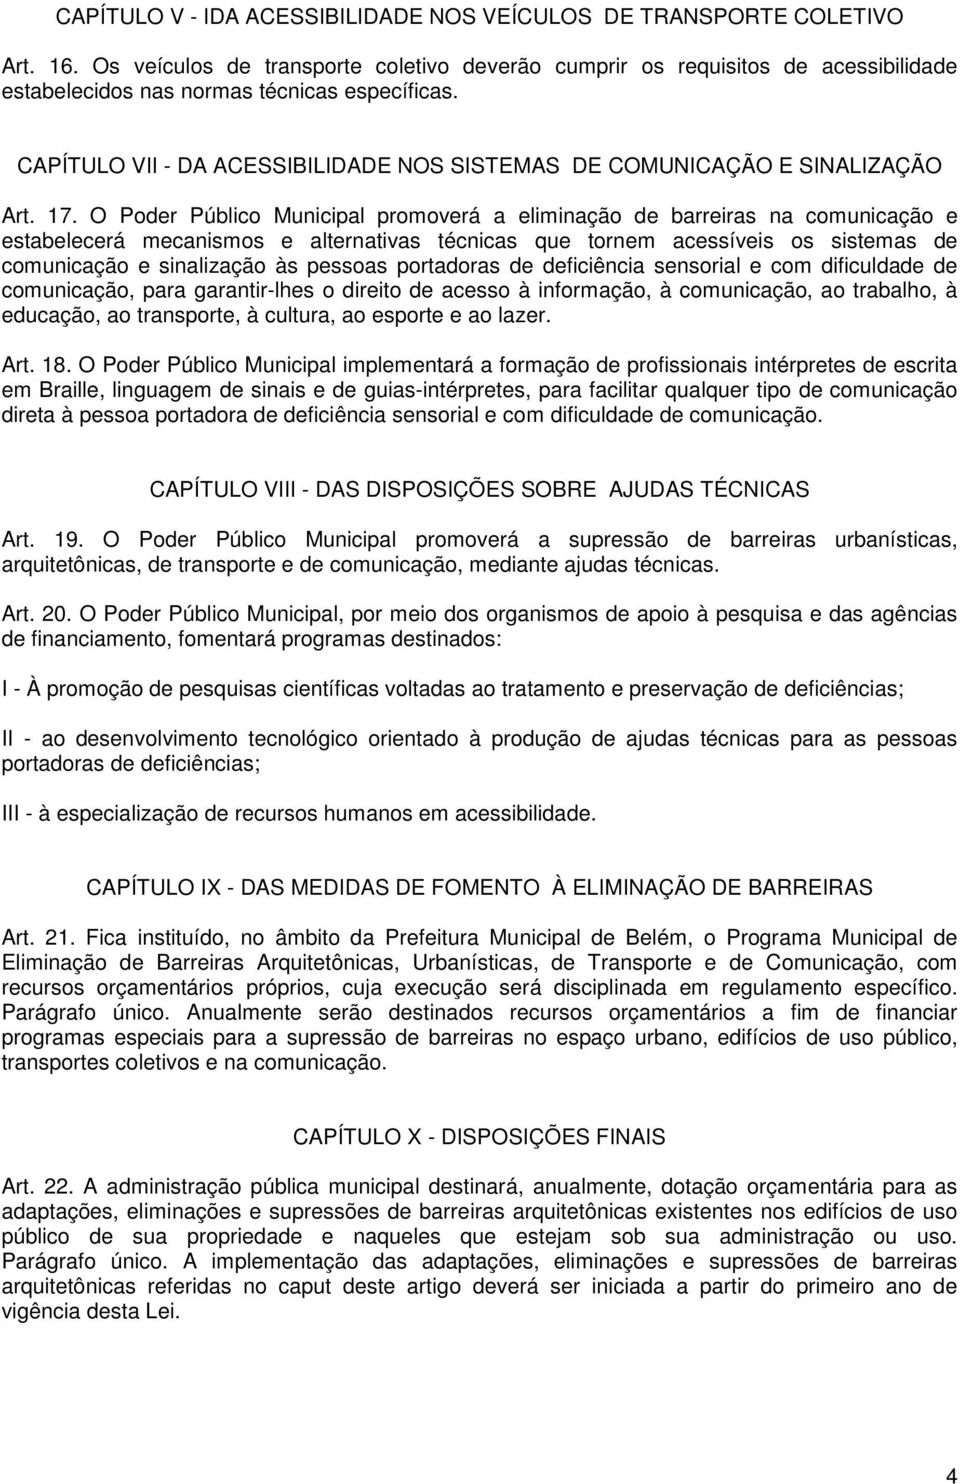 CAPÍTULO VII - DA ACESSIBILIDADE NOS SISTEMAS DE COMUNICAÇÃO E SINALIZAÇÃO Art. 17.